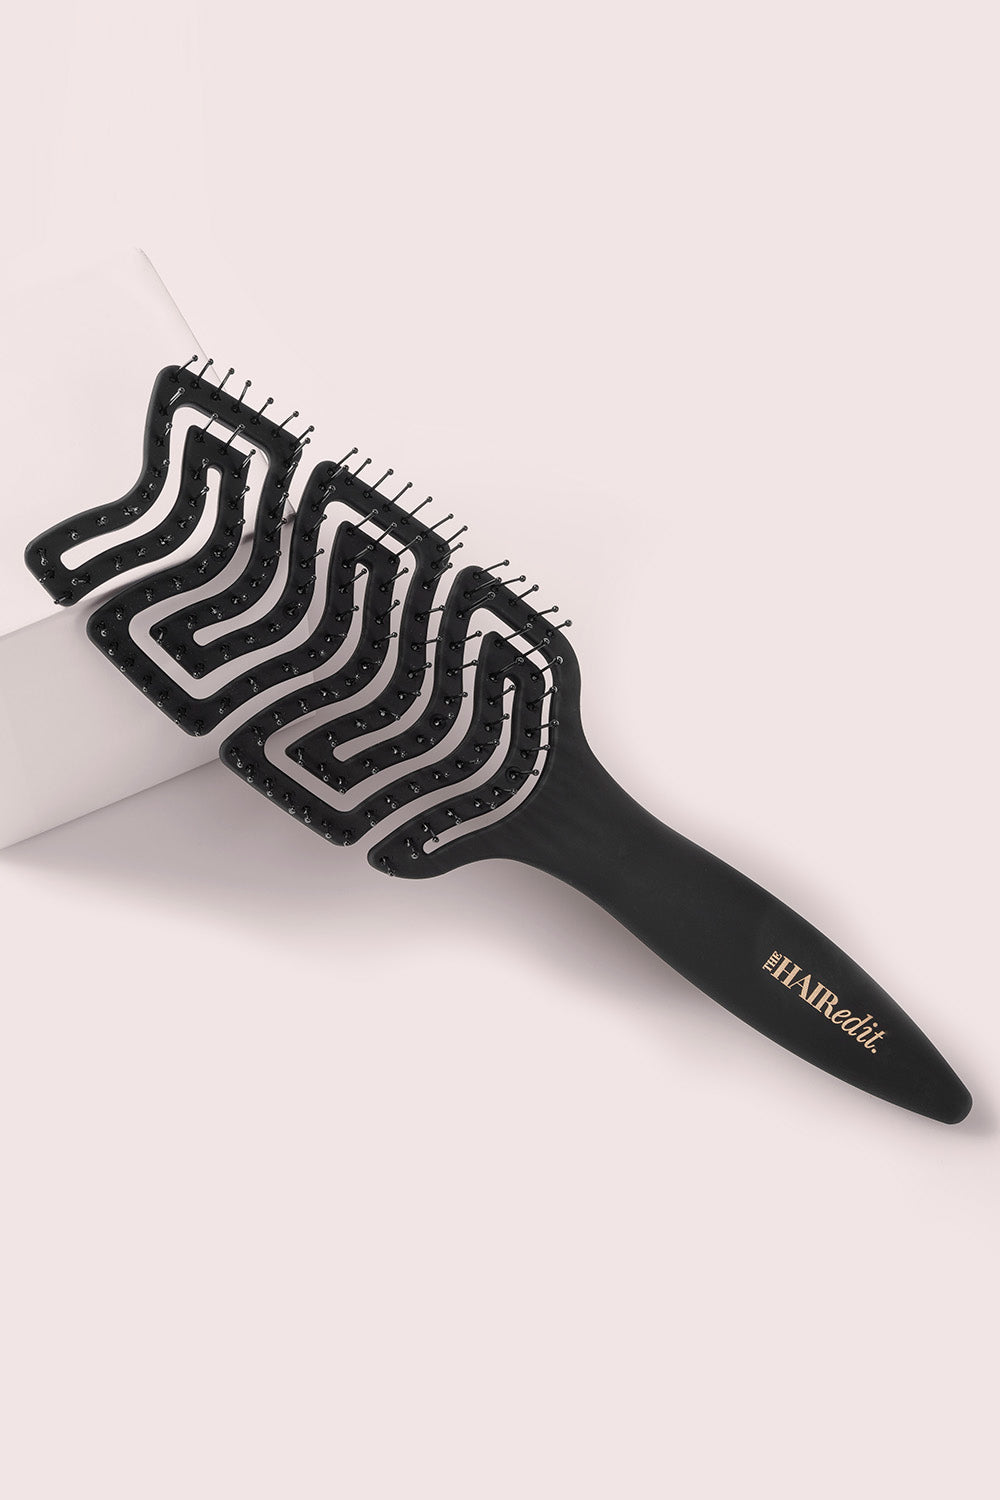 Modesa Mini Brush & Comb Set Black